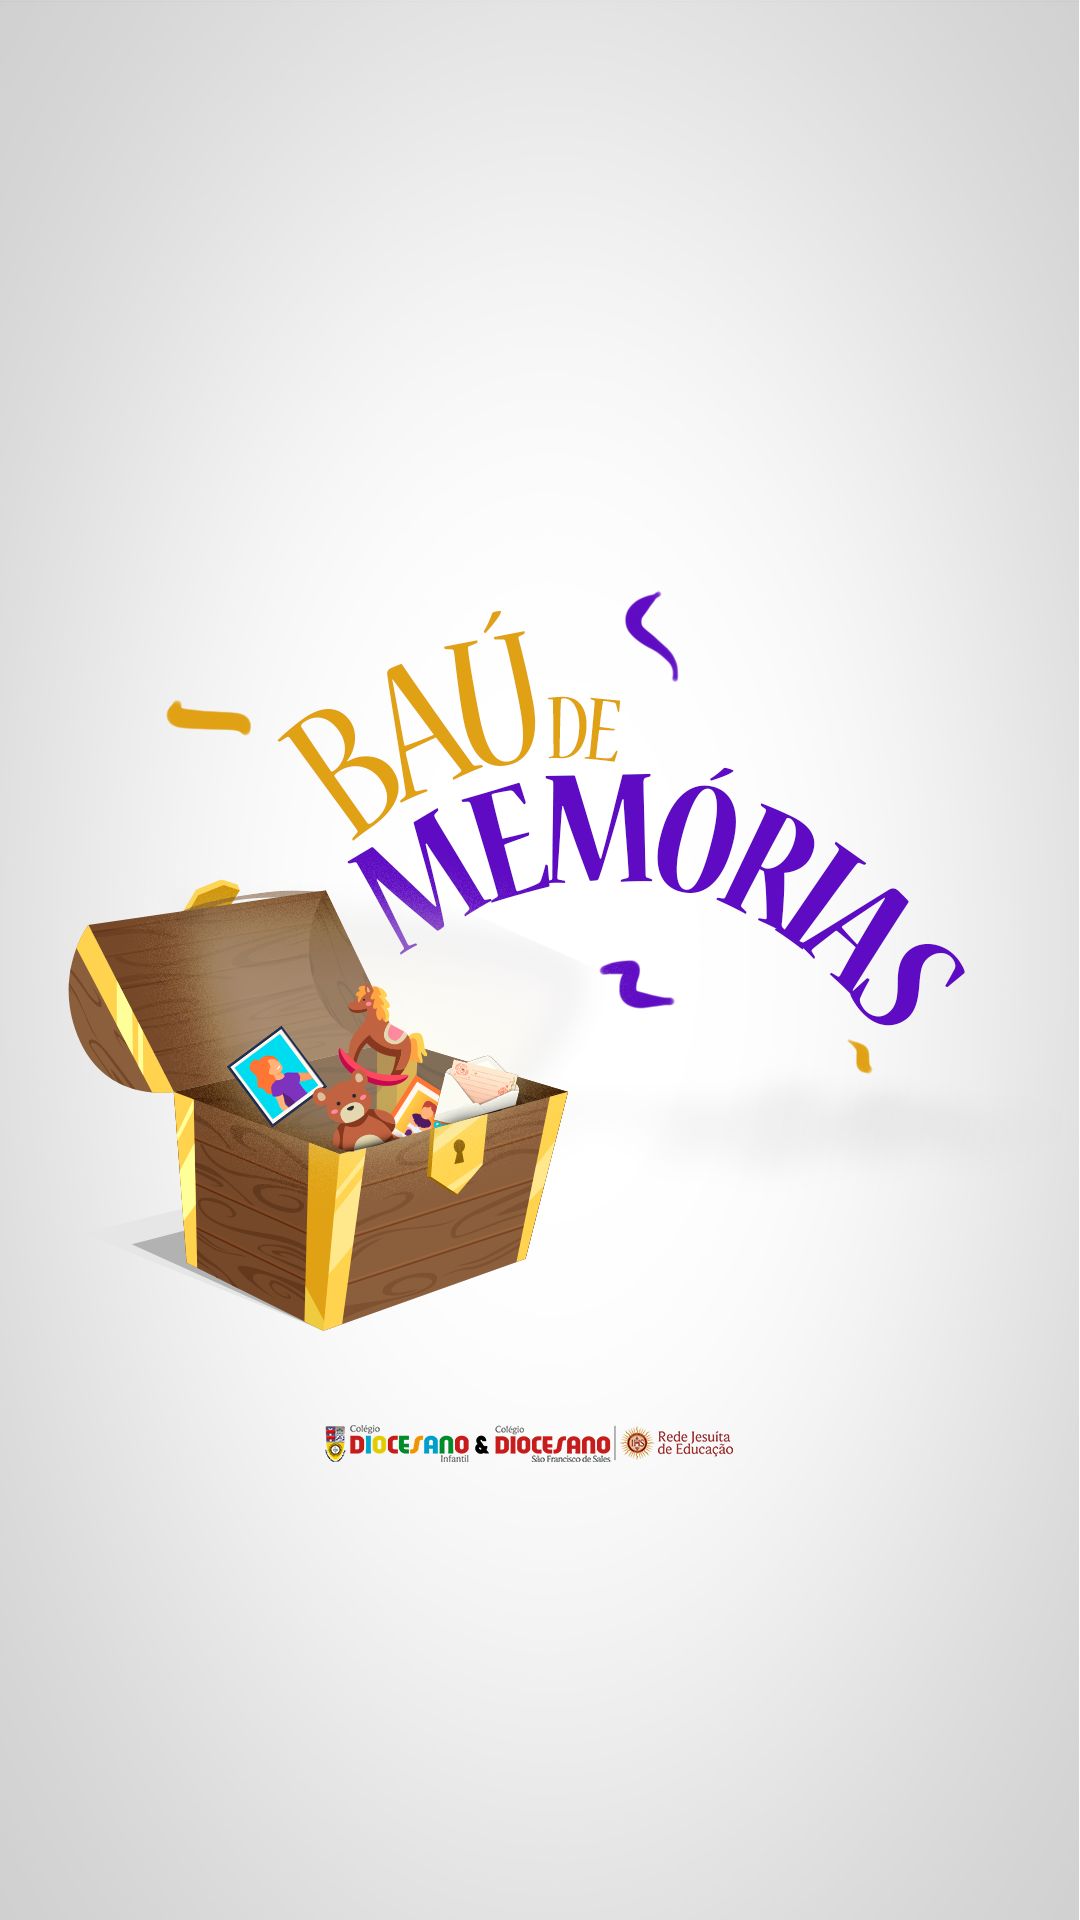 Diozinho promove reflexão para o futuro com o projeto “Baú de memórias”